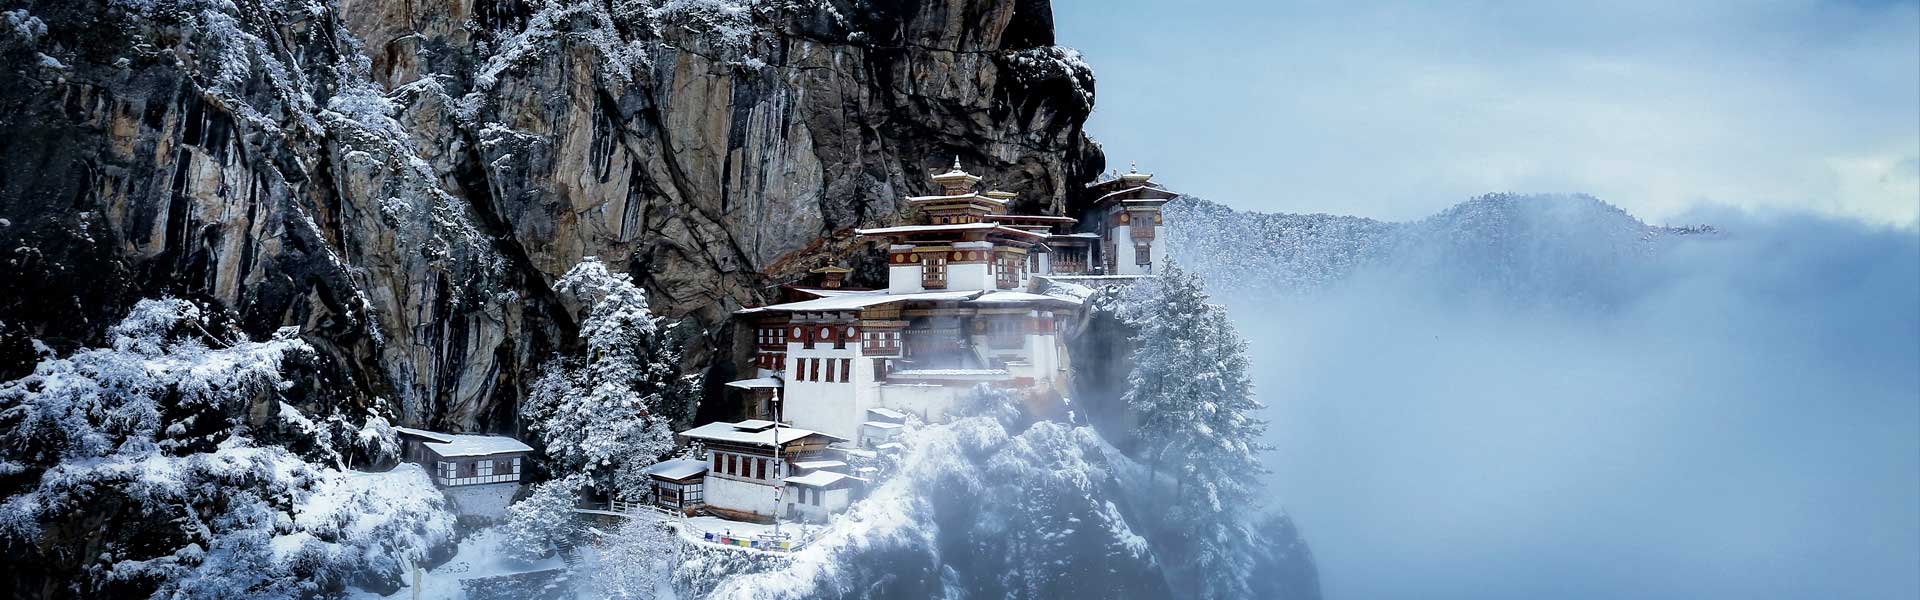 Bhutan Tour From USA